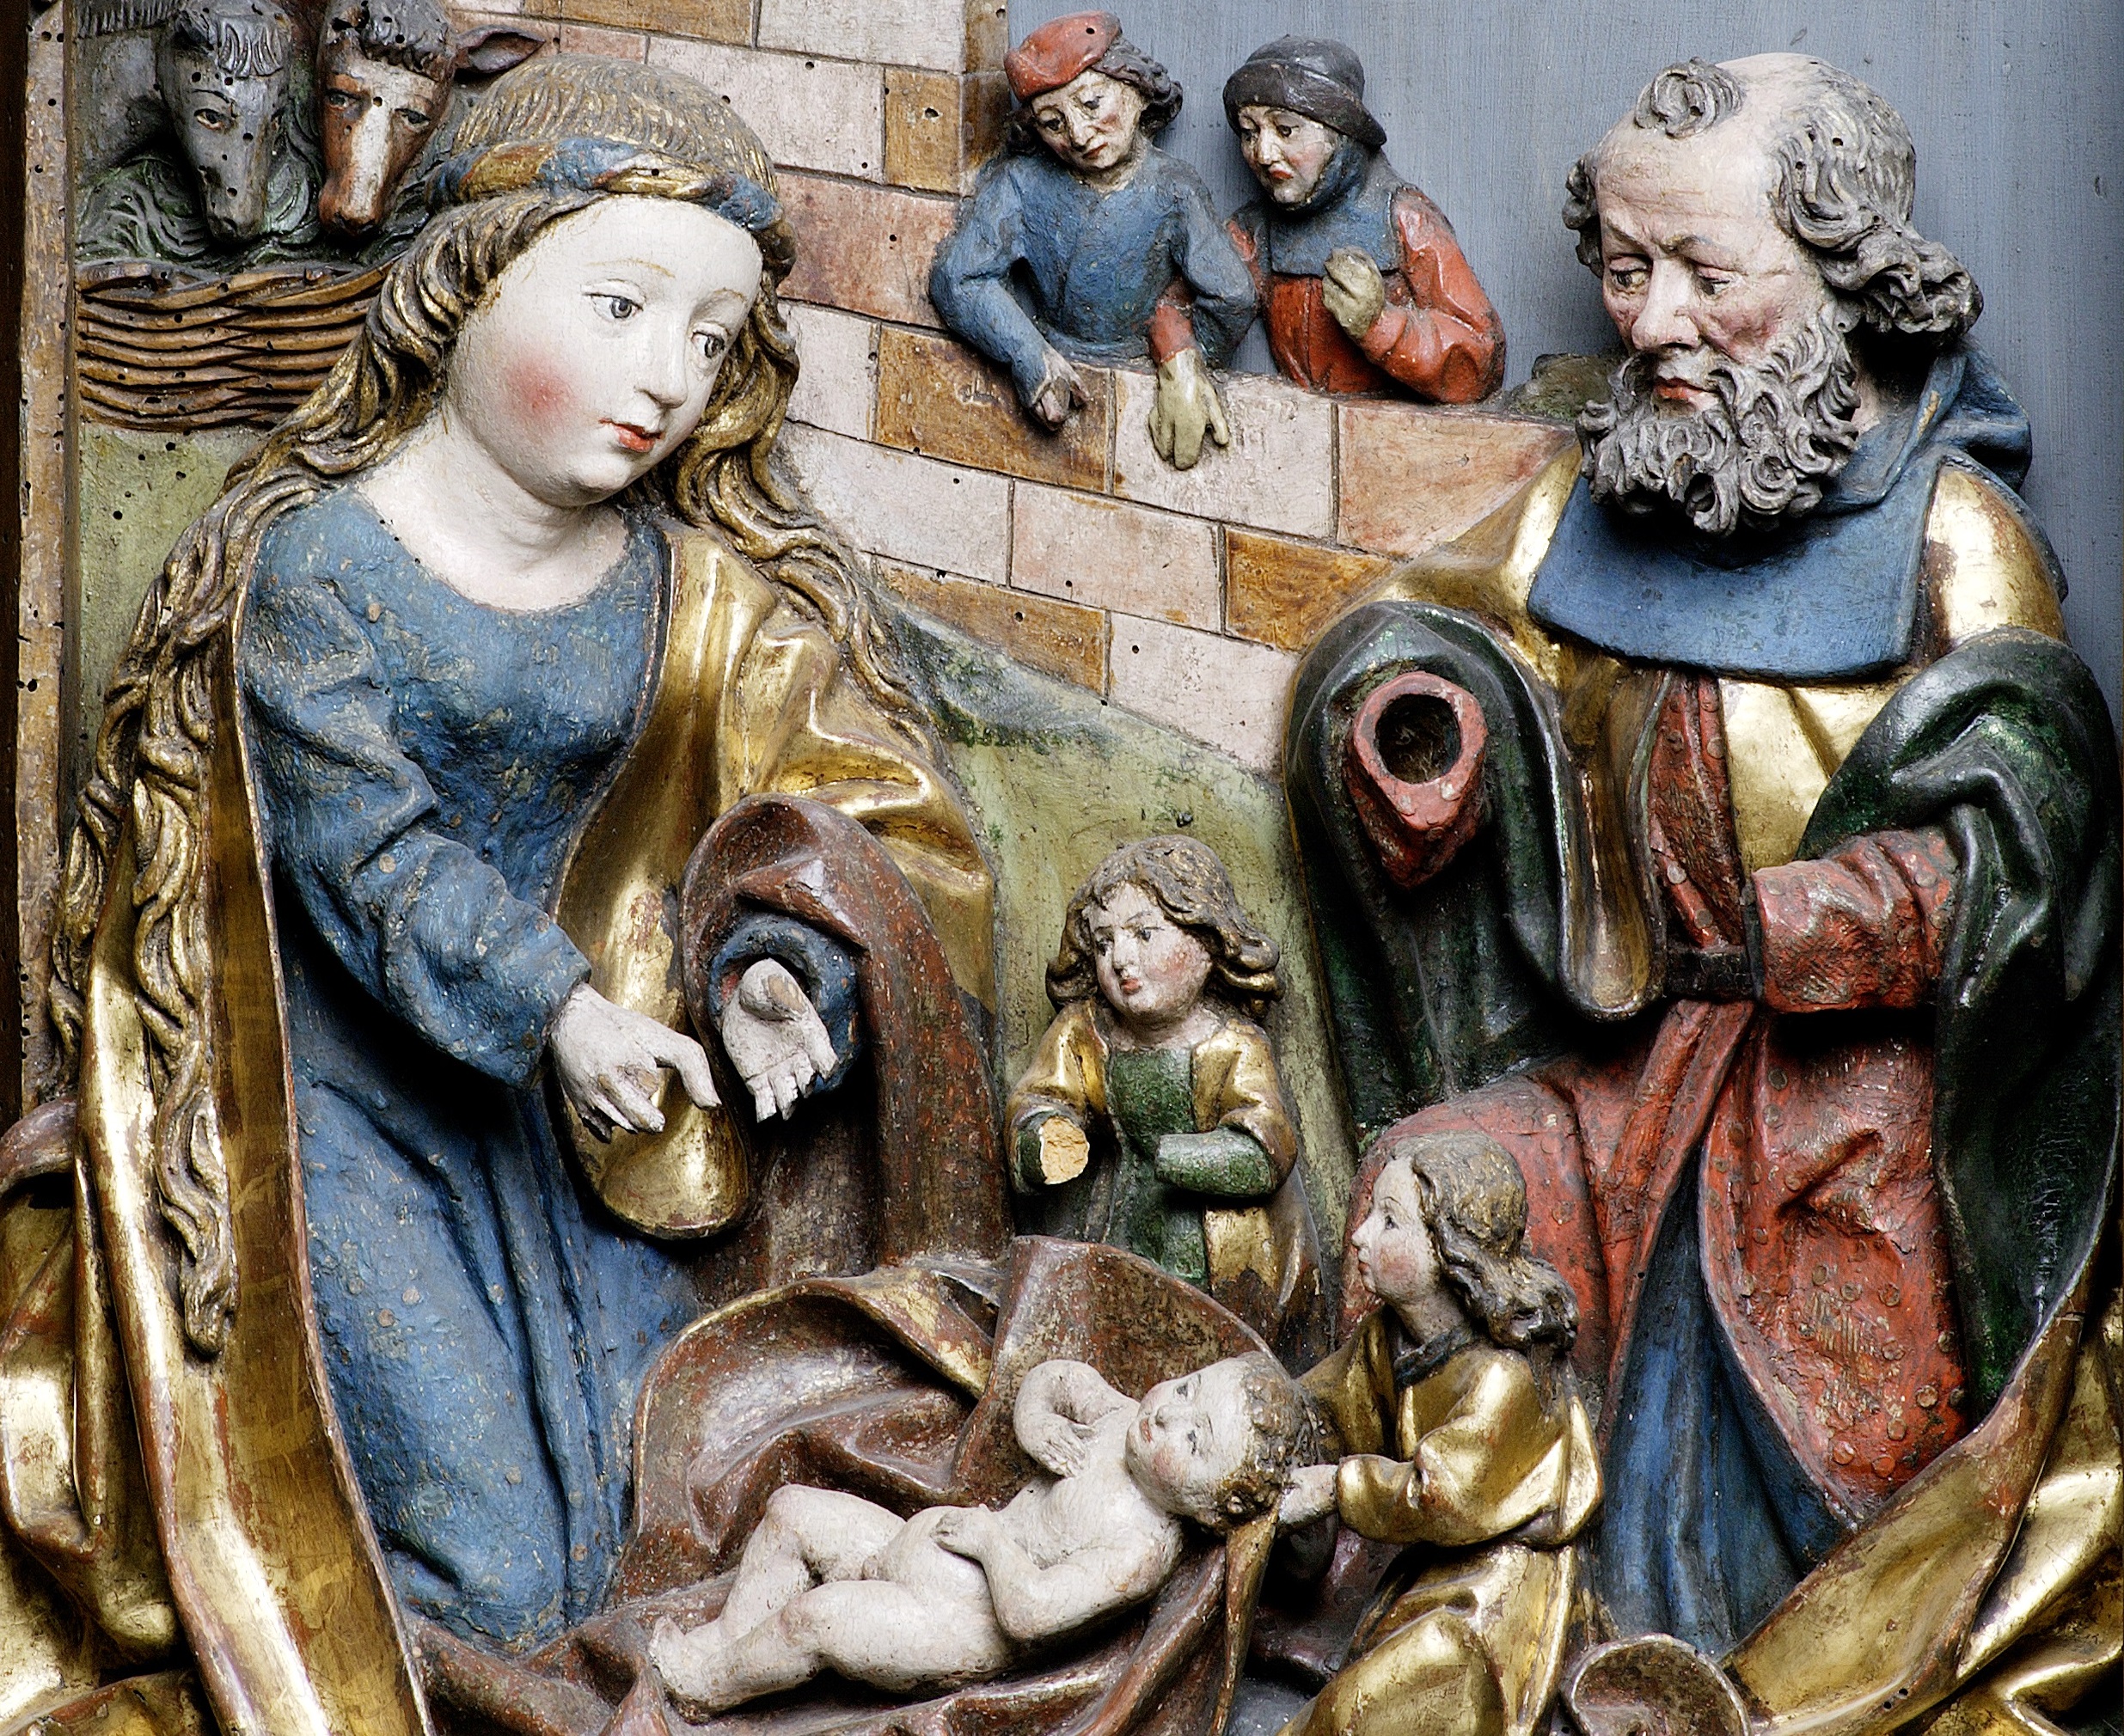 Detailansicht vom geschnitzten Altar der St. Moritz-Kirche Taucha mit der Szene der Geburt Jesu